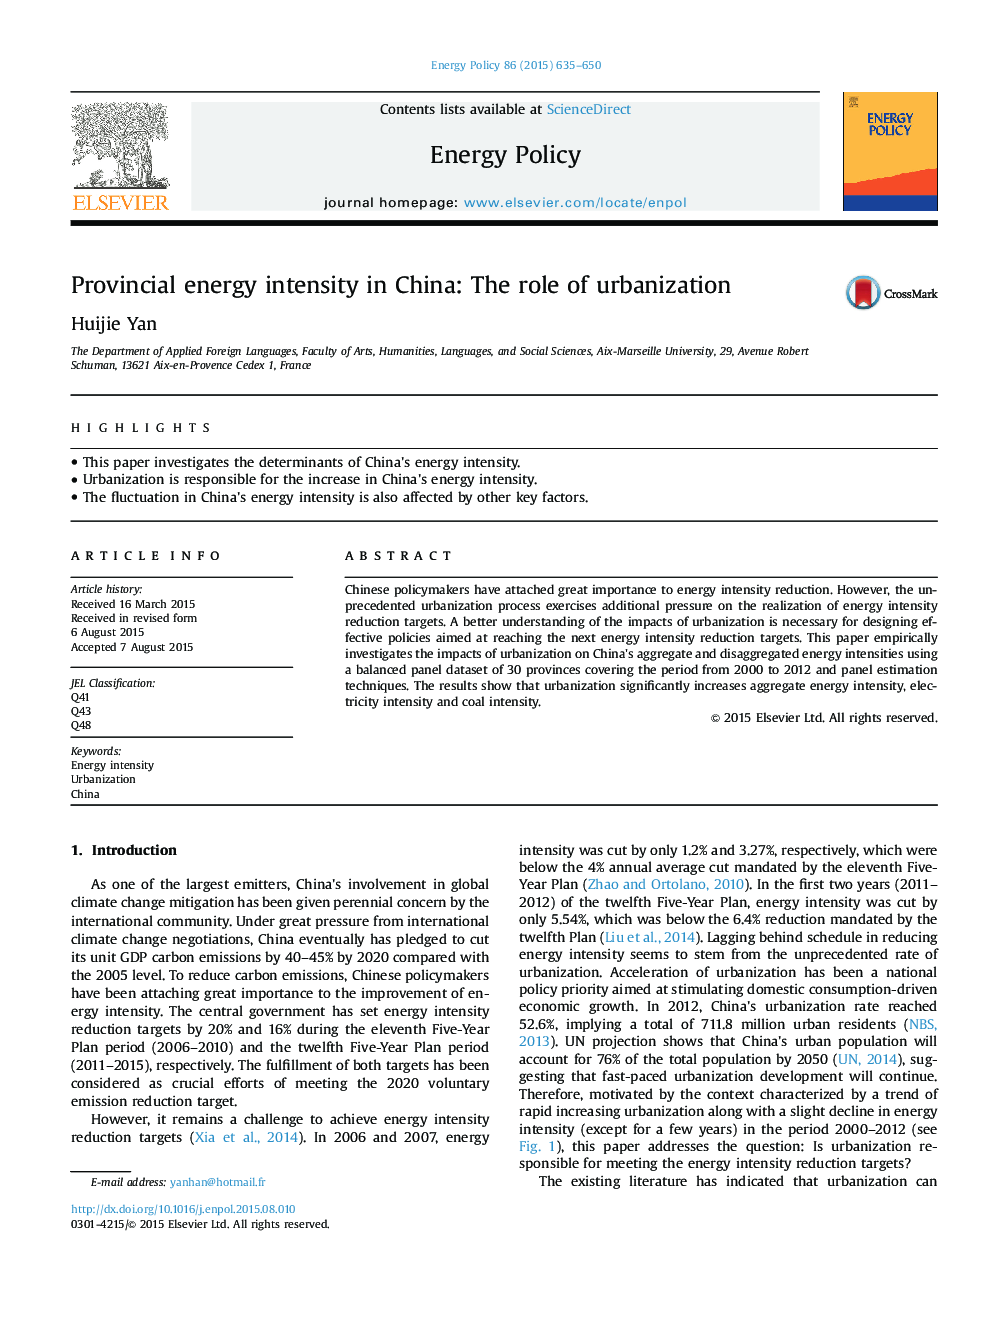 شدت انرژی استان در چین: نقش شهرنشینی 